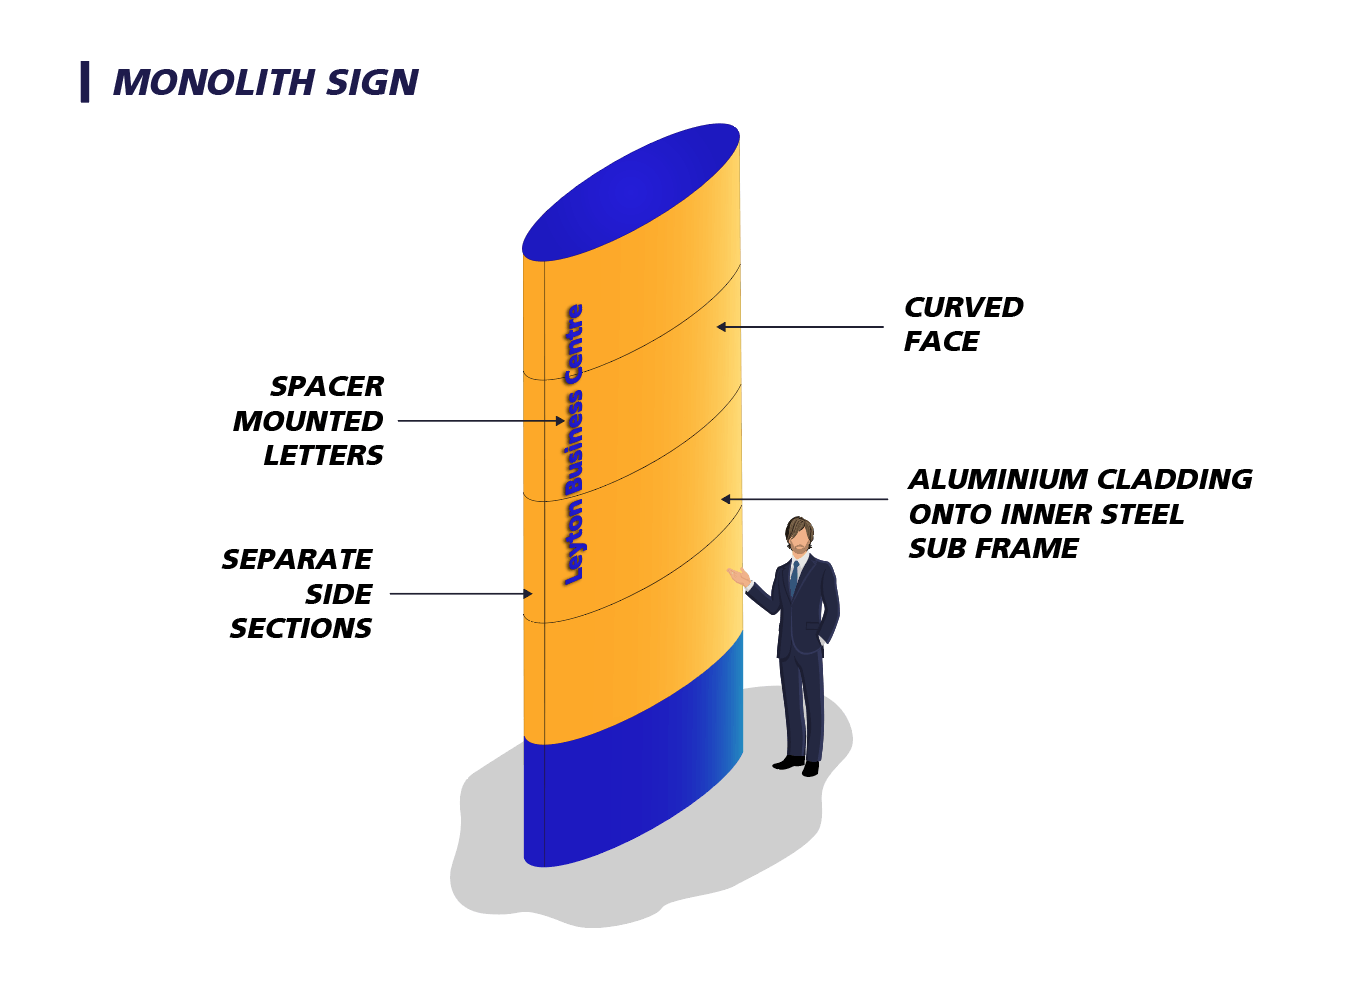 MONOLITH SIGN